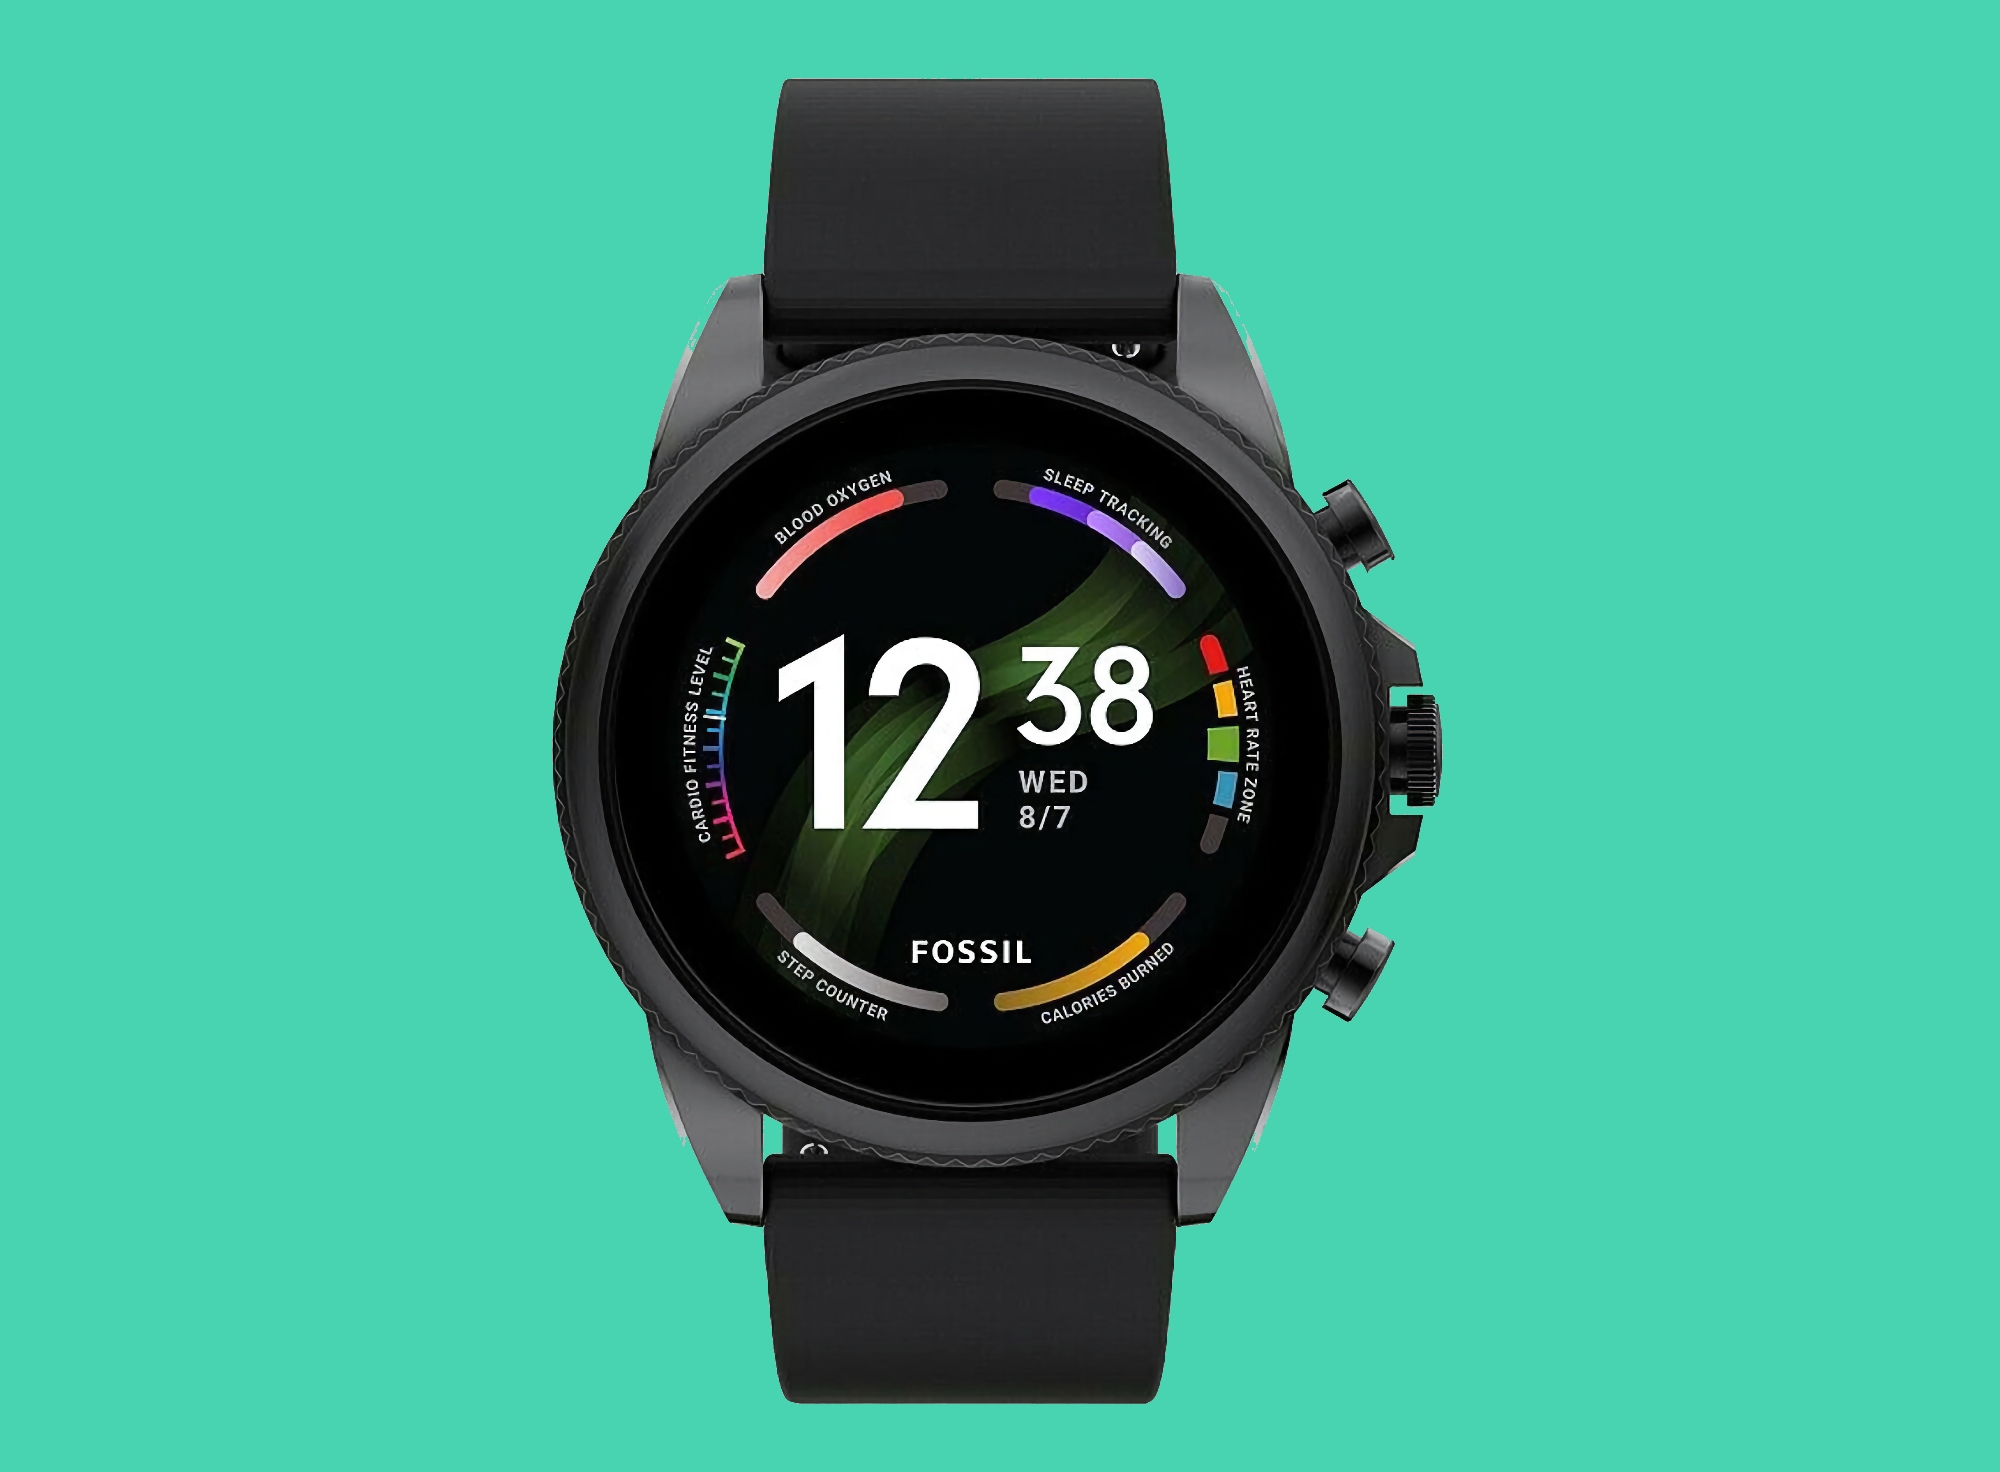 Fossil Gen 6 op Amazon: smartwatch met 44mm kast, NFC en Wear OS aan boord voor $151 korting